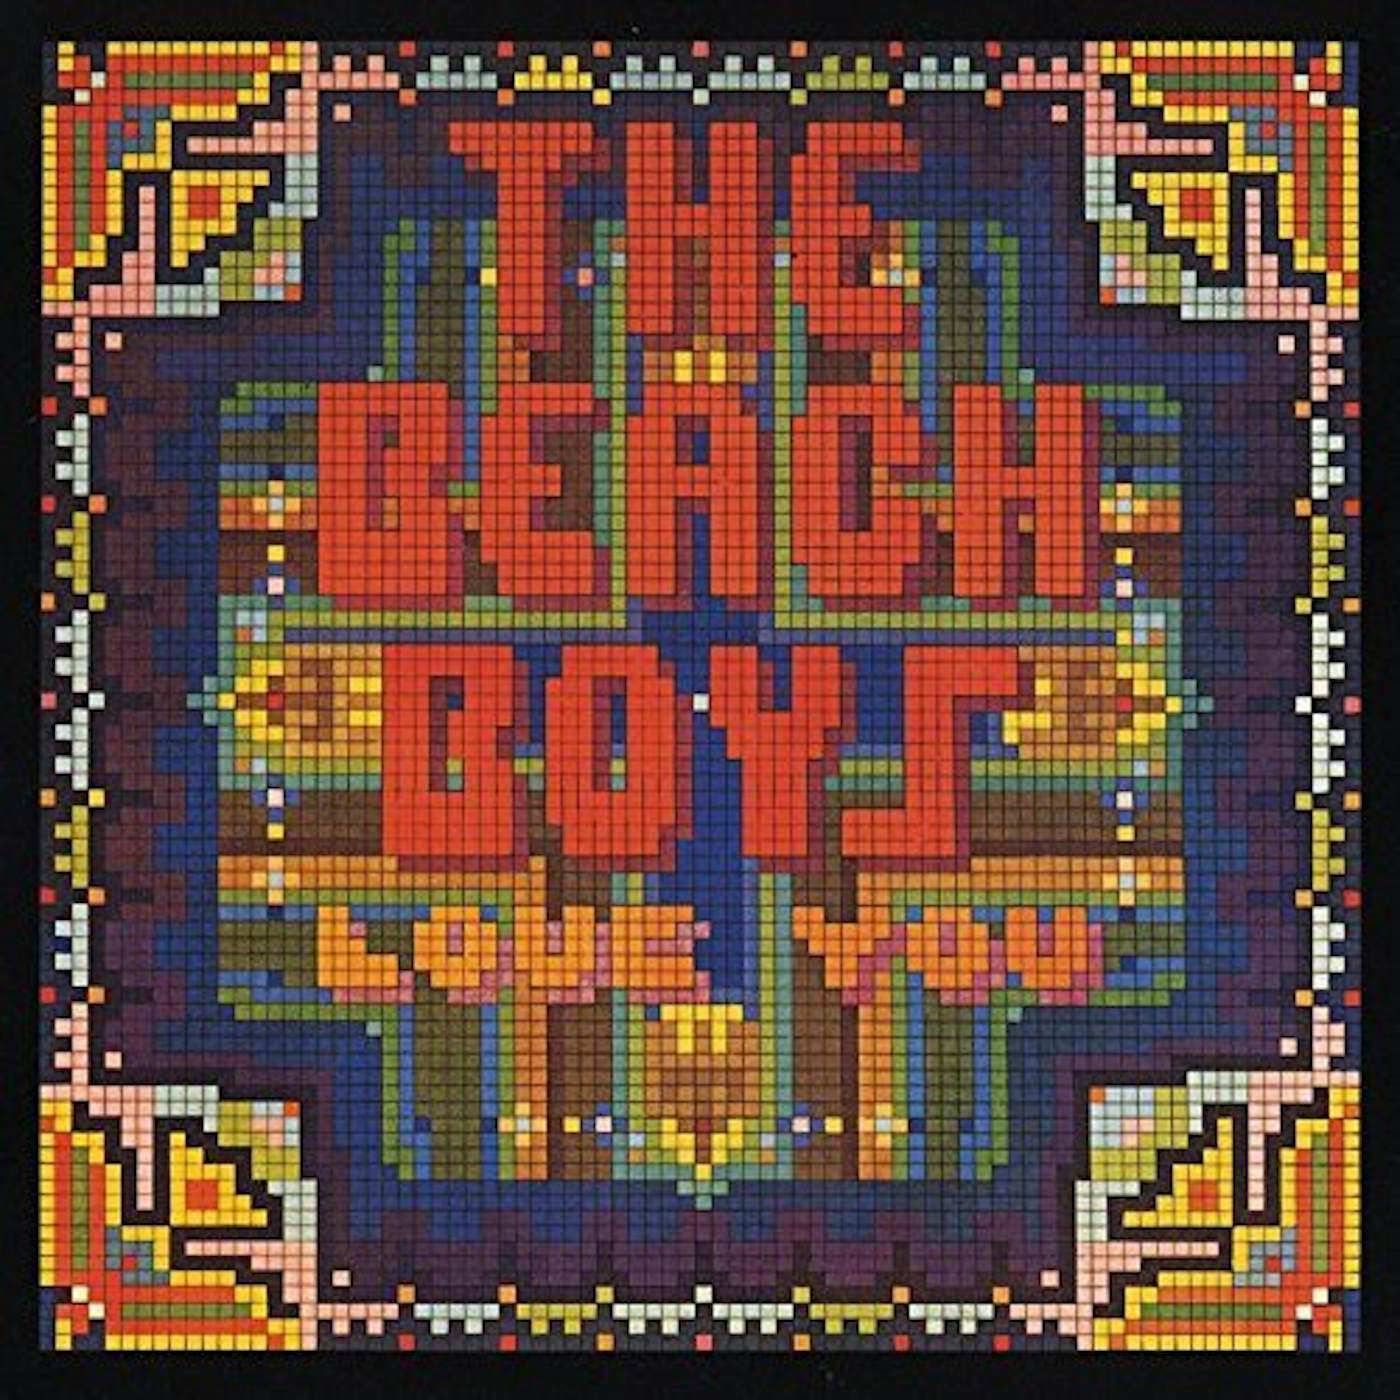 The Beach Boys LOVE YOU CD